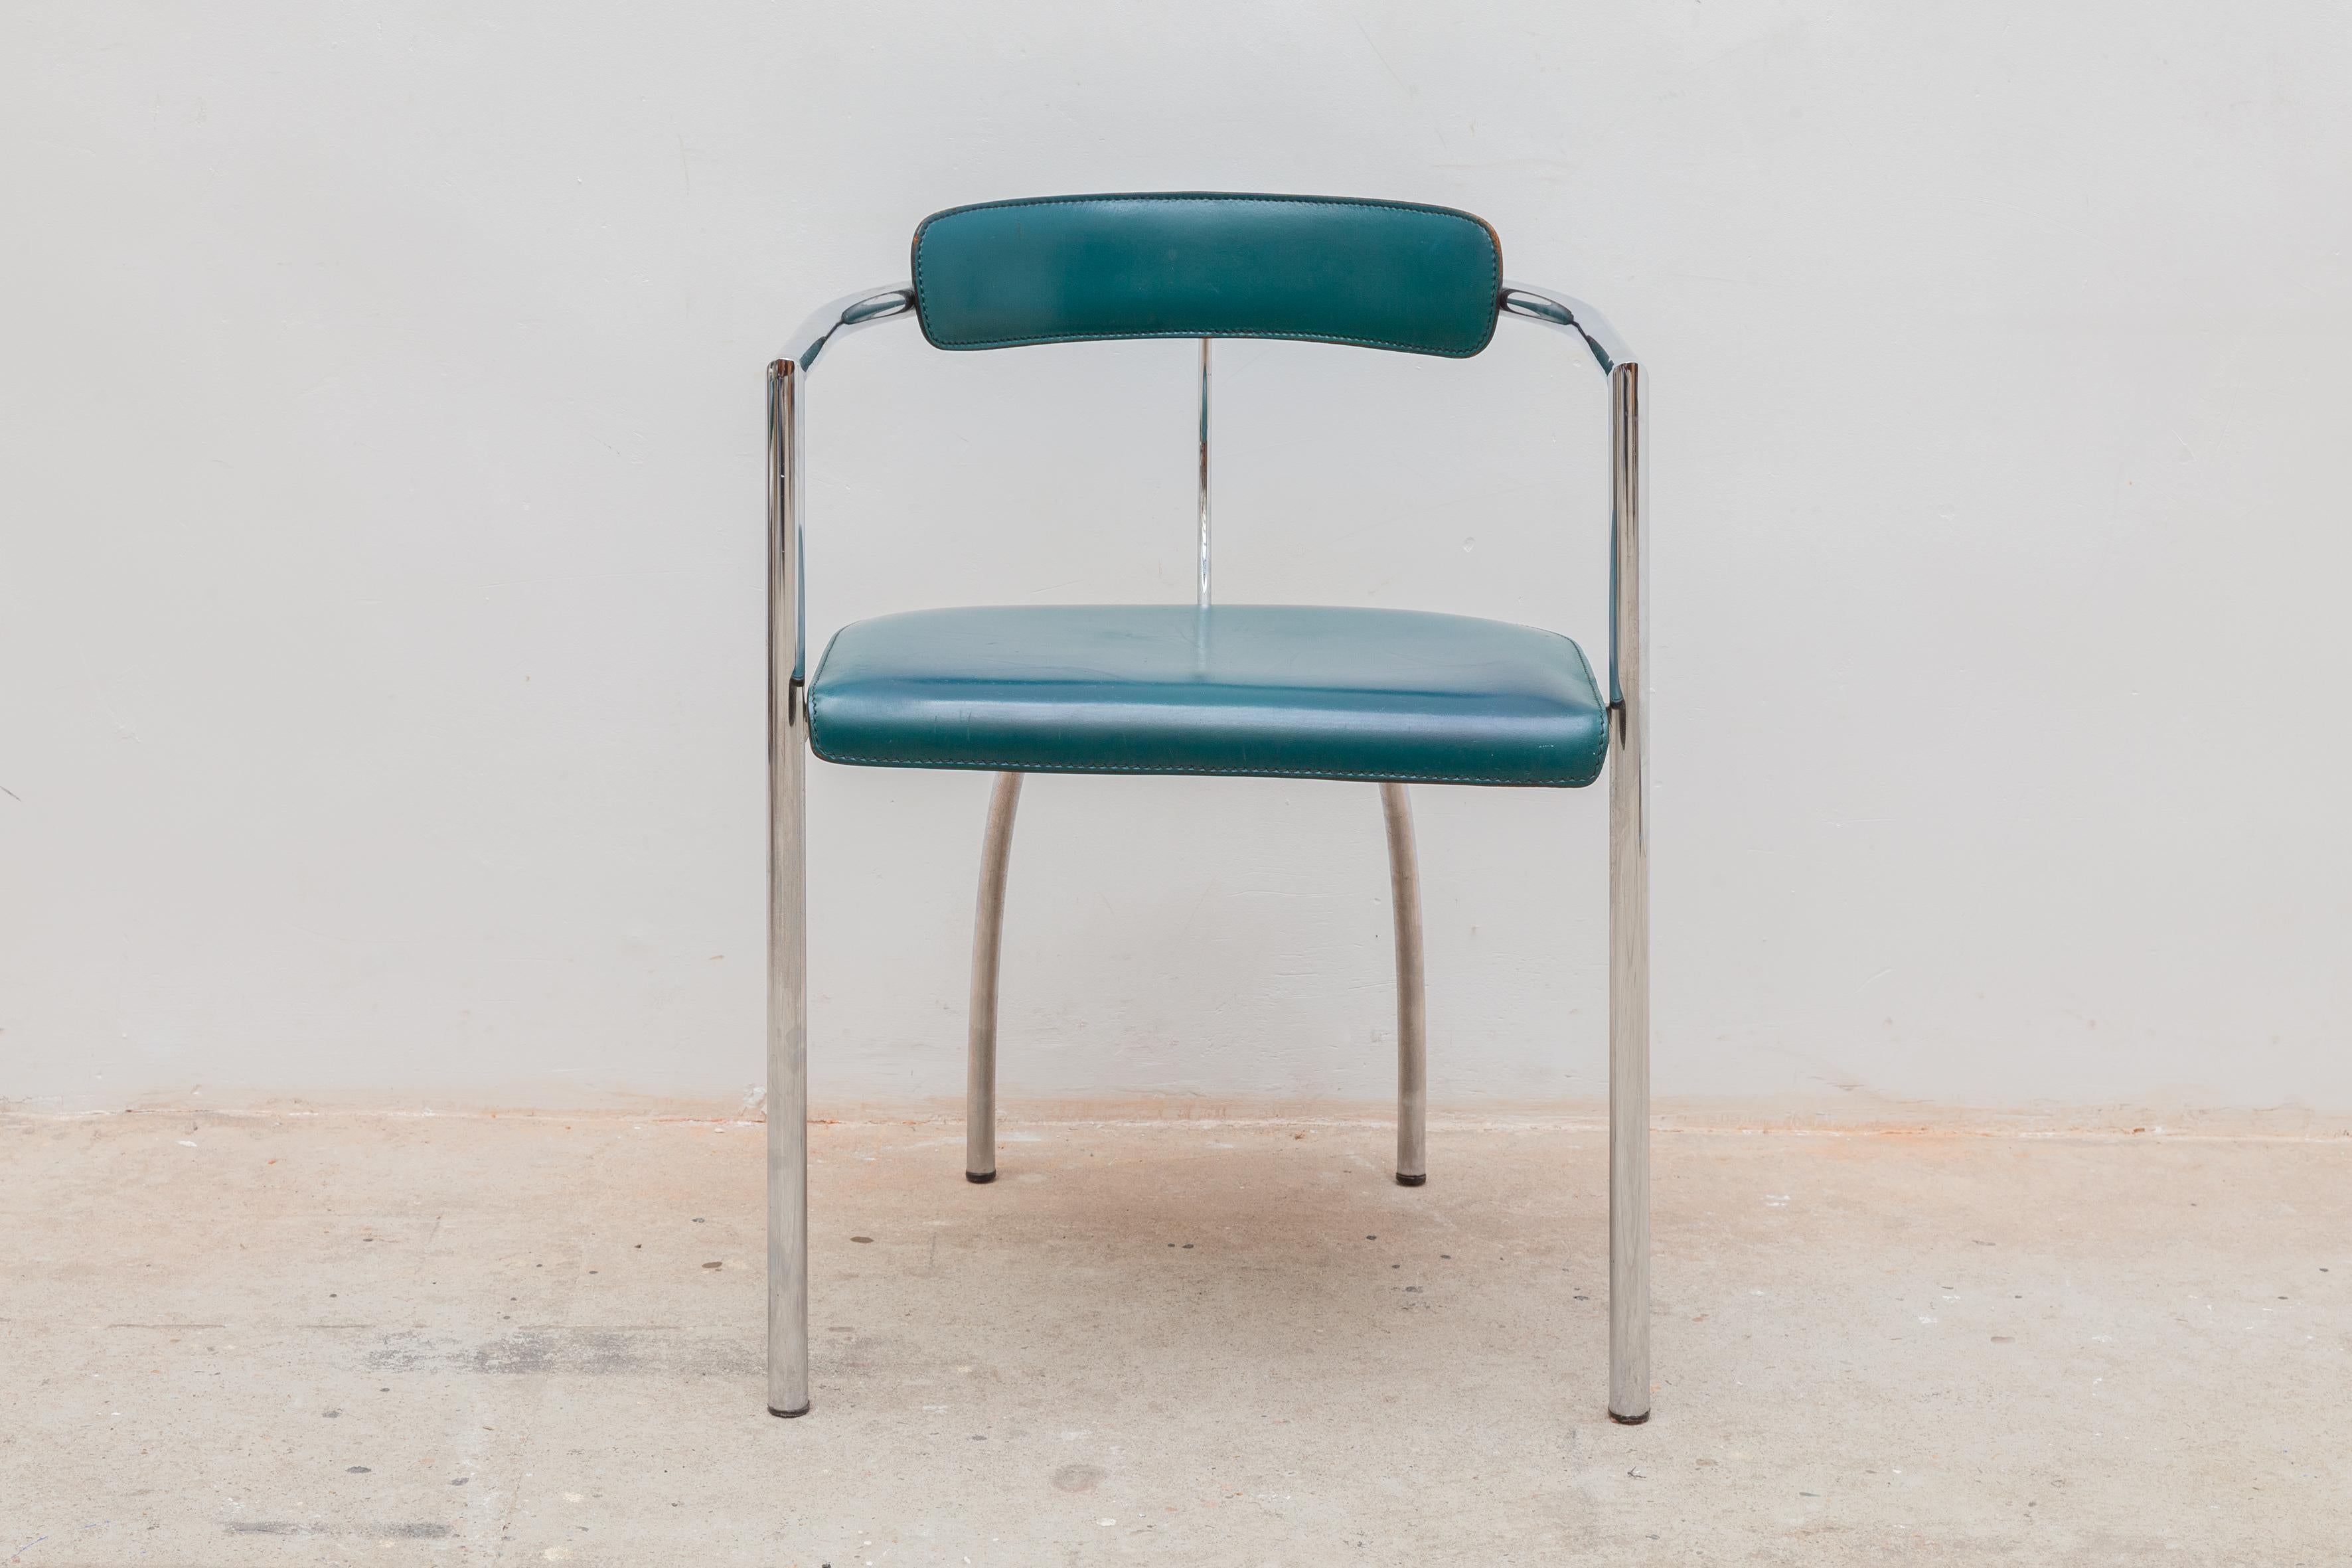 Satz von vier italienischen Stühlen aus verchromtem Stahl und grünem Leder, 1970er Jahre. Arrben Lederstühle alle vier in original gutem Zustand, bequemer Sitz.